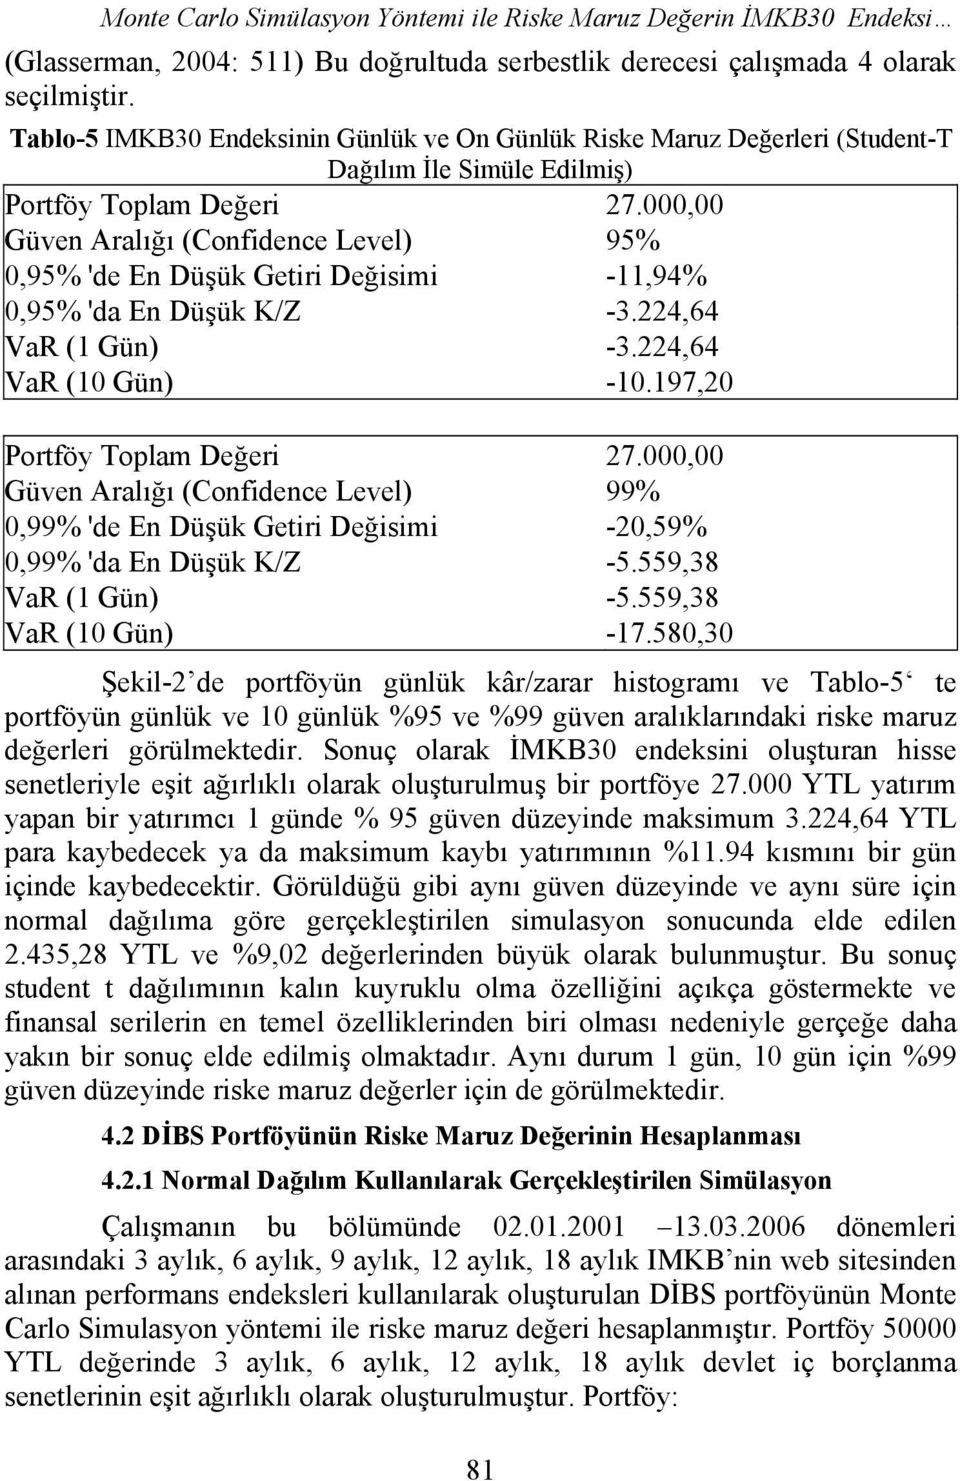 000,00 Güven Aralığı (Confidence Level) 95% 0,95% 'de En Düşük Getiri Değisimi -11,94% 0,95% 'da En Düşük K/Z -3.224,64 VaR (1 Gün) -3.224,64 VaR (10 Gün) -10.197,20 Portföy Toplam Değeri 27.